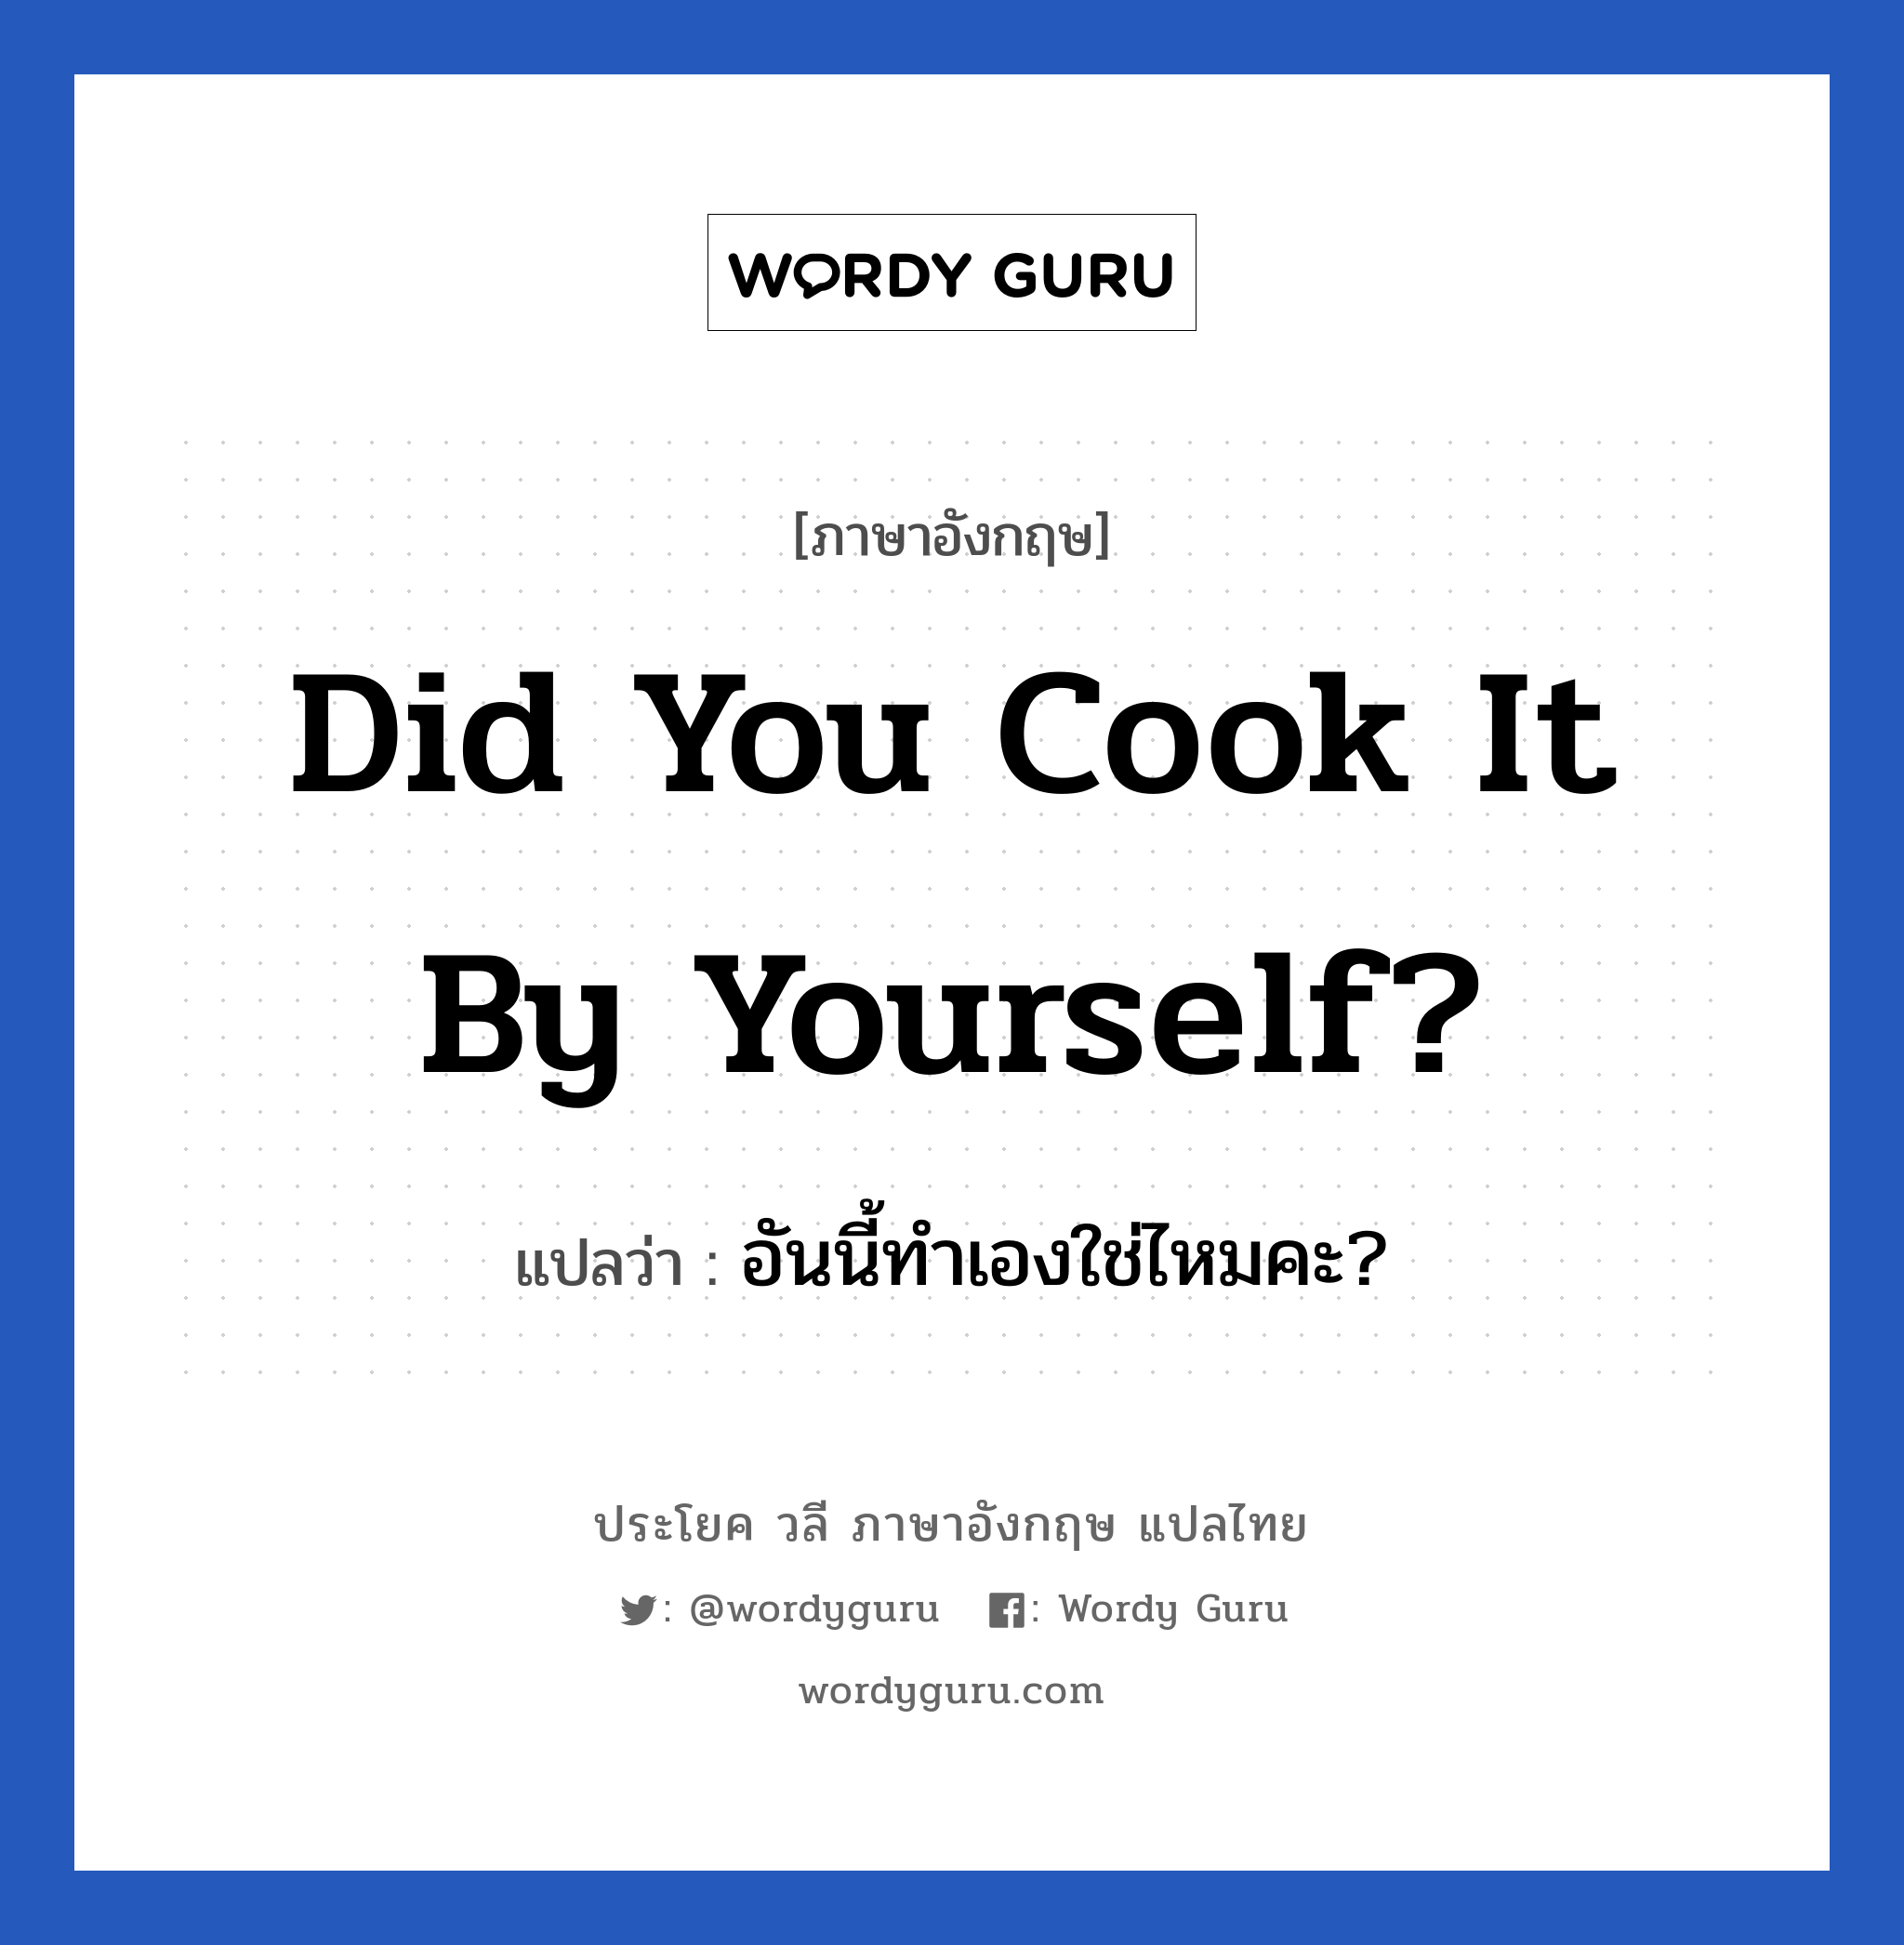 Did you cook it by yourself? แปลว่า? เป็นประโยคในกลุ่มประเภท ในบ้าน, วลีภาษาอังกฤษ Did you cook it by yourself? แปลว่า อันนี้ทำเองใช่ไหมคะ? ใช้ถามเกี่ยวกับอาหาร หมวด ในบ้าน